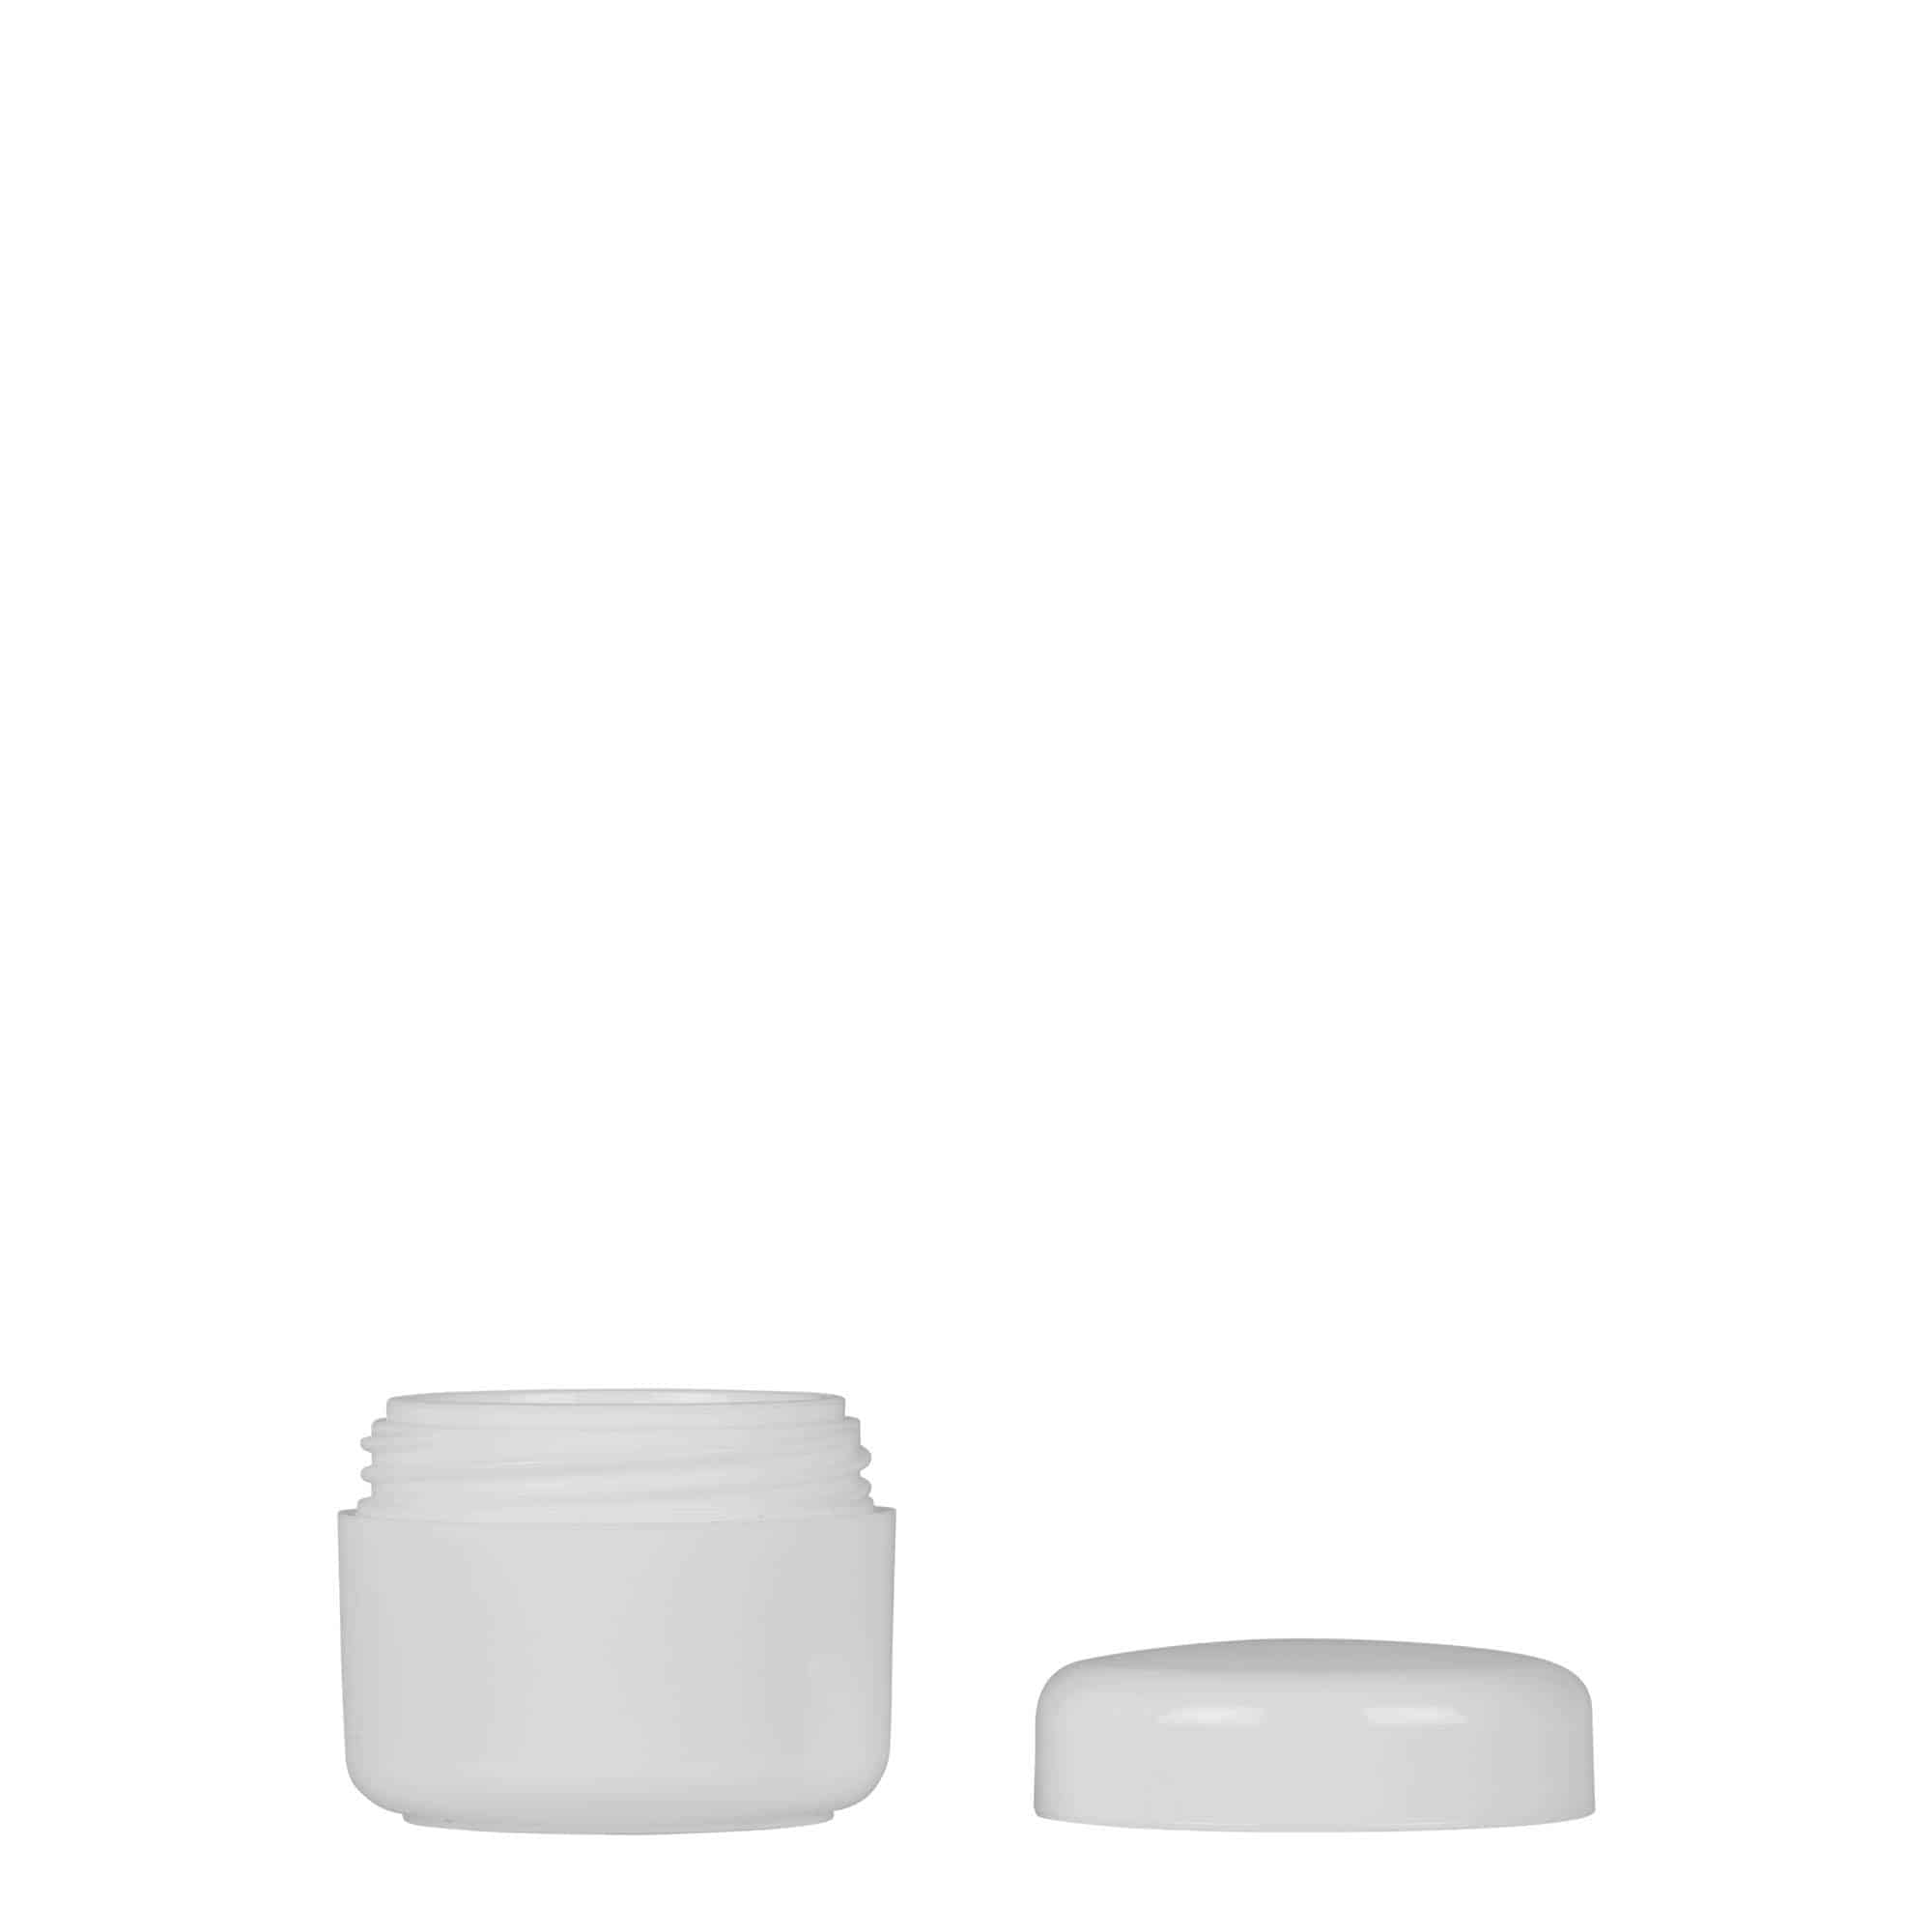 5 ml plastic jar 'Bianca', PP, white, closure: screw cap